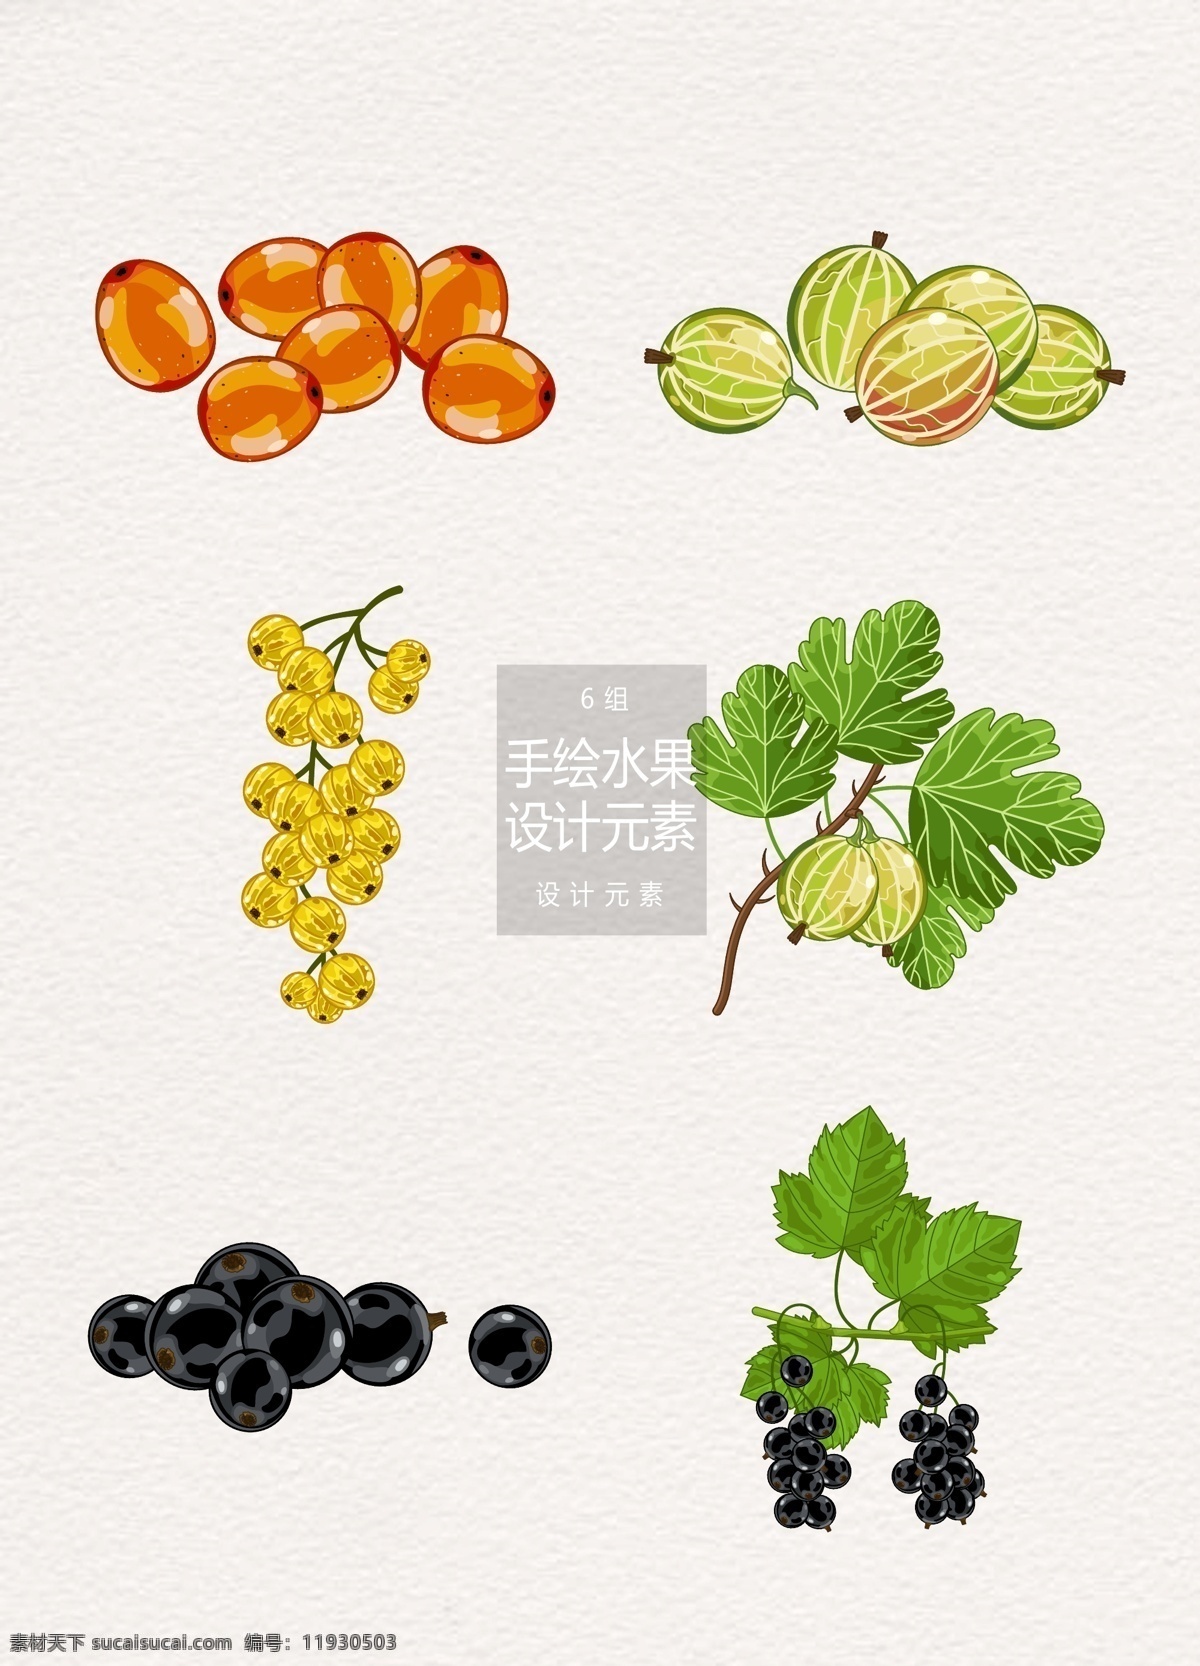 手绘 水果 插画 元素 设计元素 手绘水果 水果插画 矢量素材 蓝莓 野果